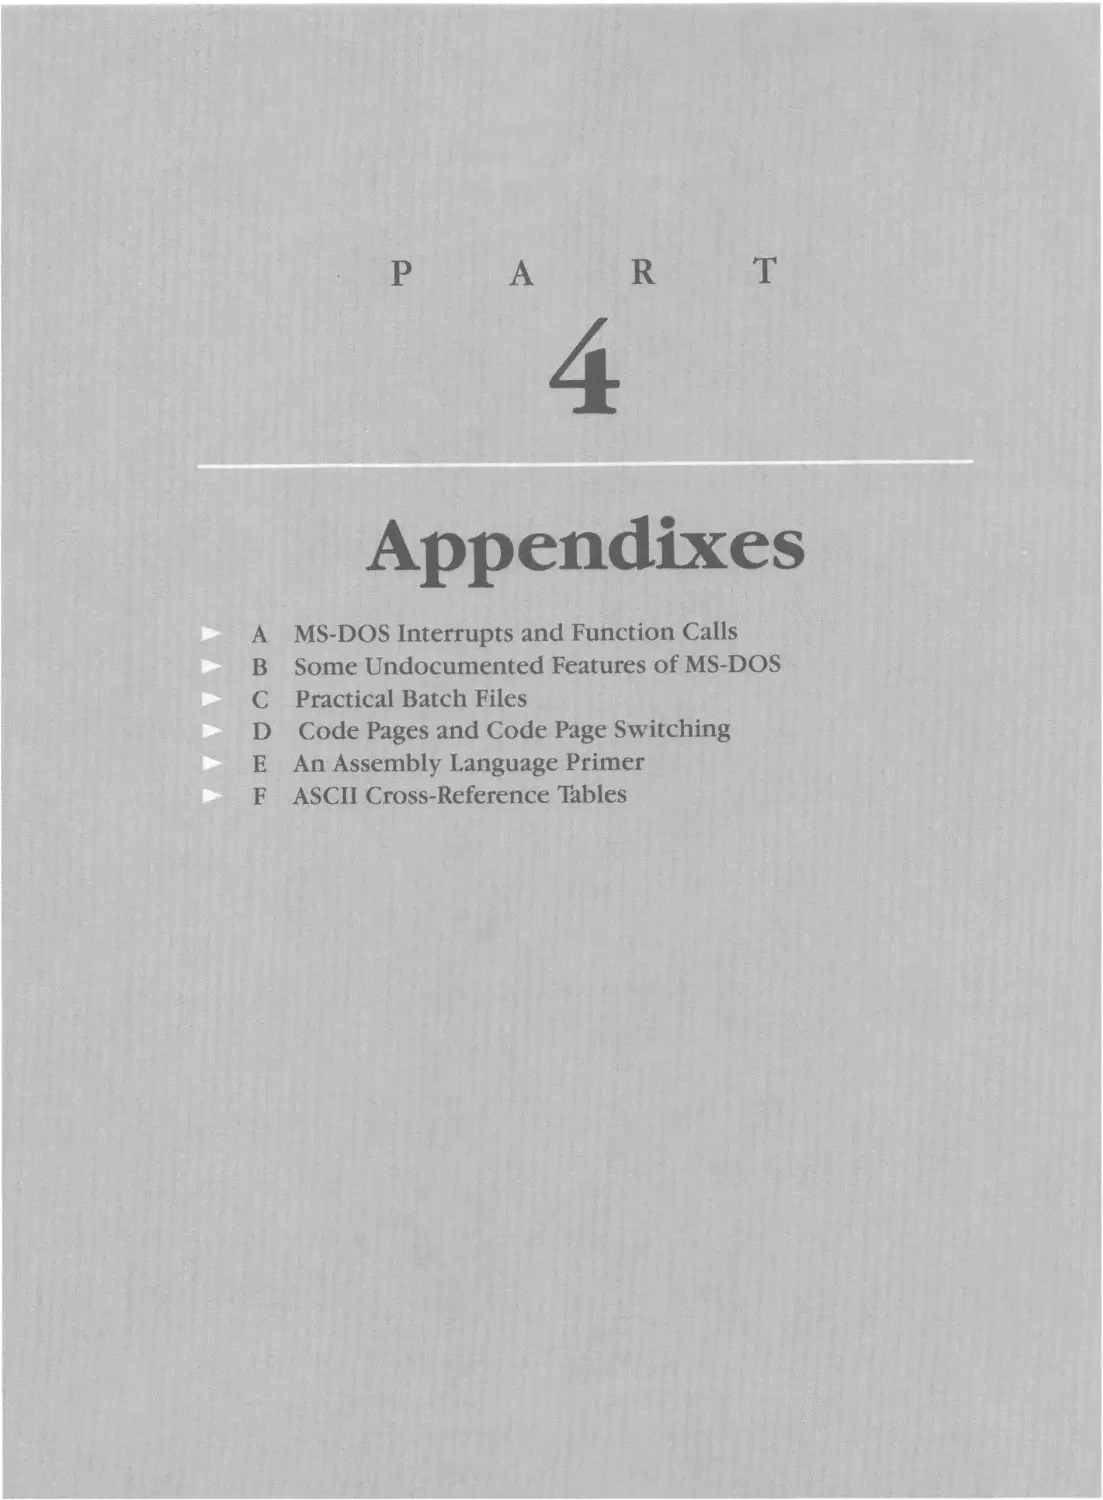 ---- PART 4 ---- Appendixes